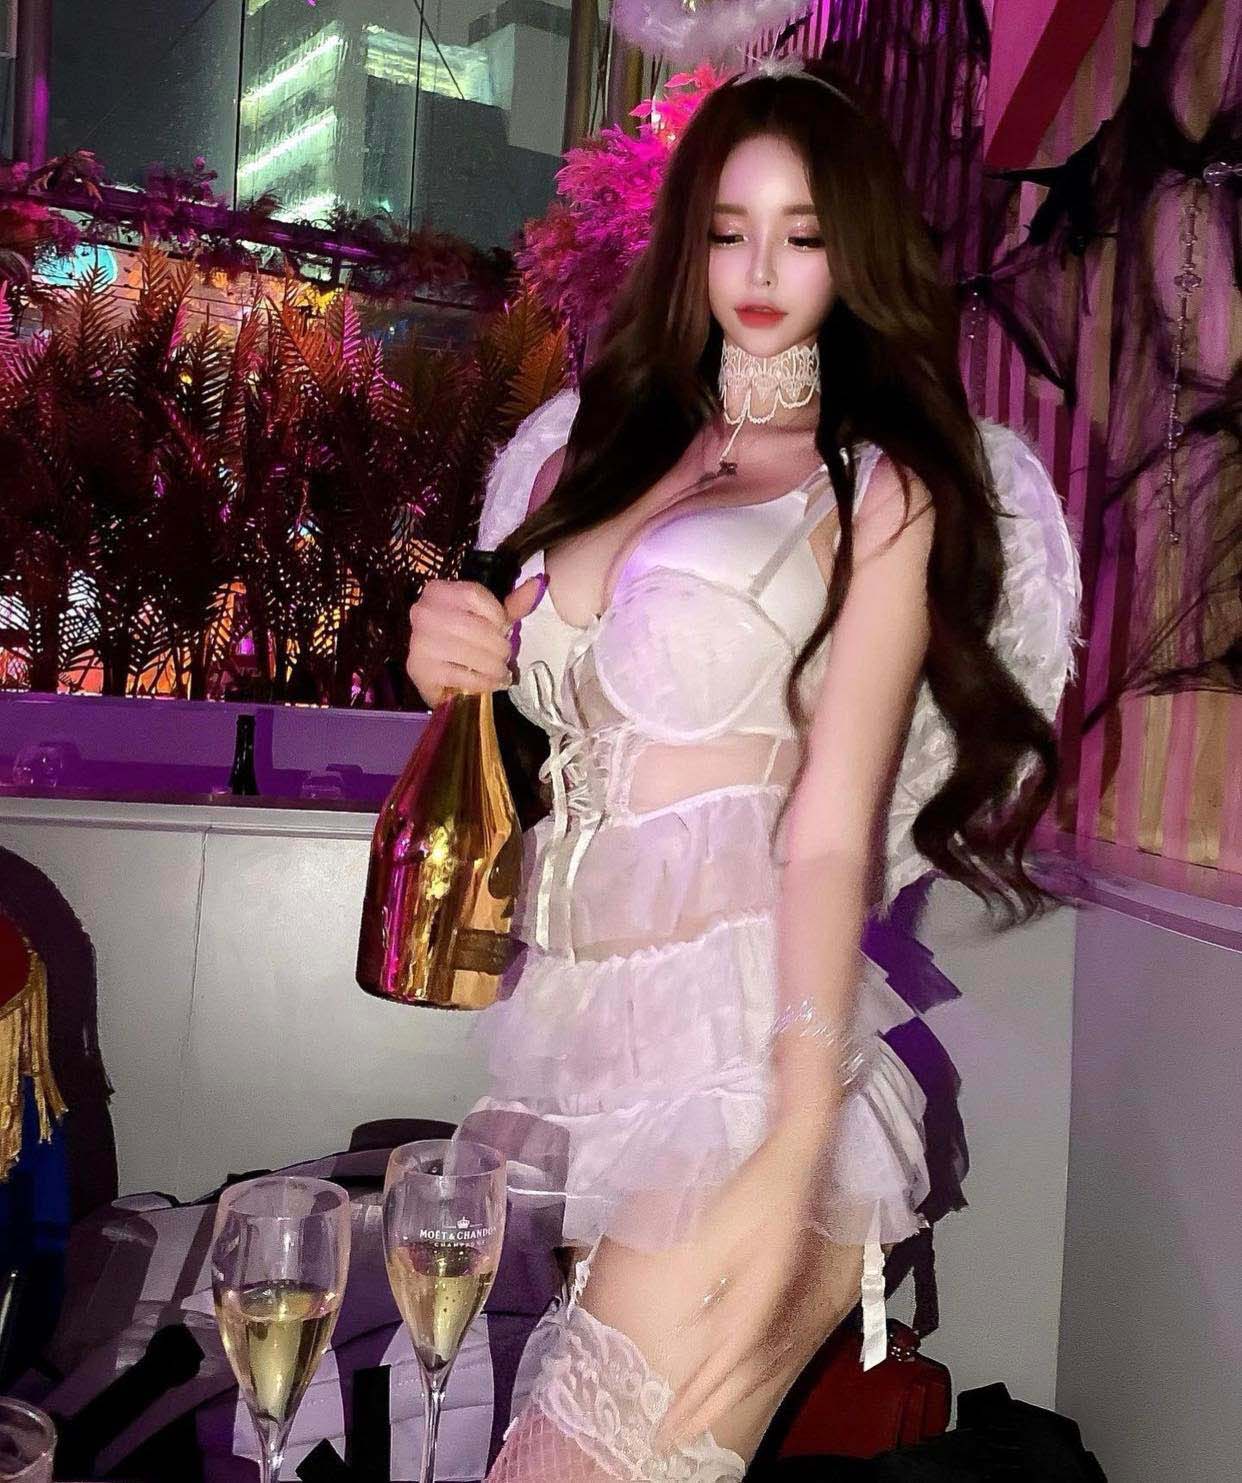 Diện váy ngủ trong suốt theo kiểu "râu ông nọ cắm cằm bà kia", hot girl Hàn Quốc thu hút sự chú ý trong bữa tiệc.